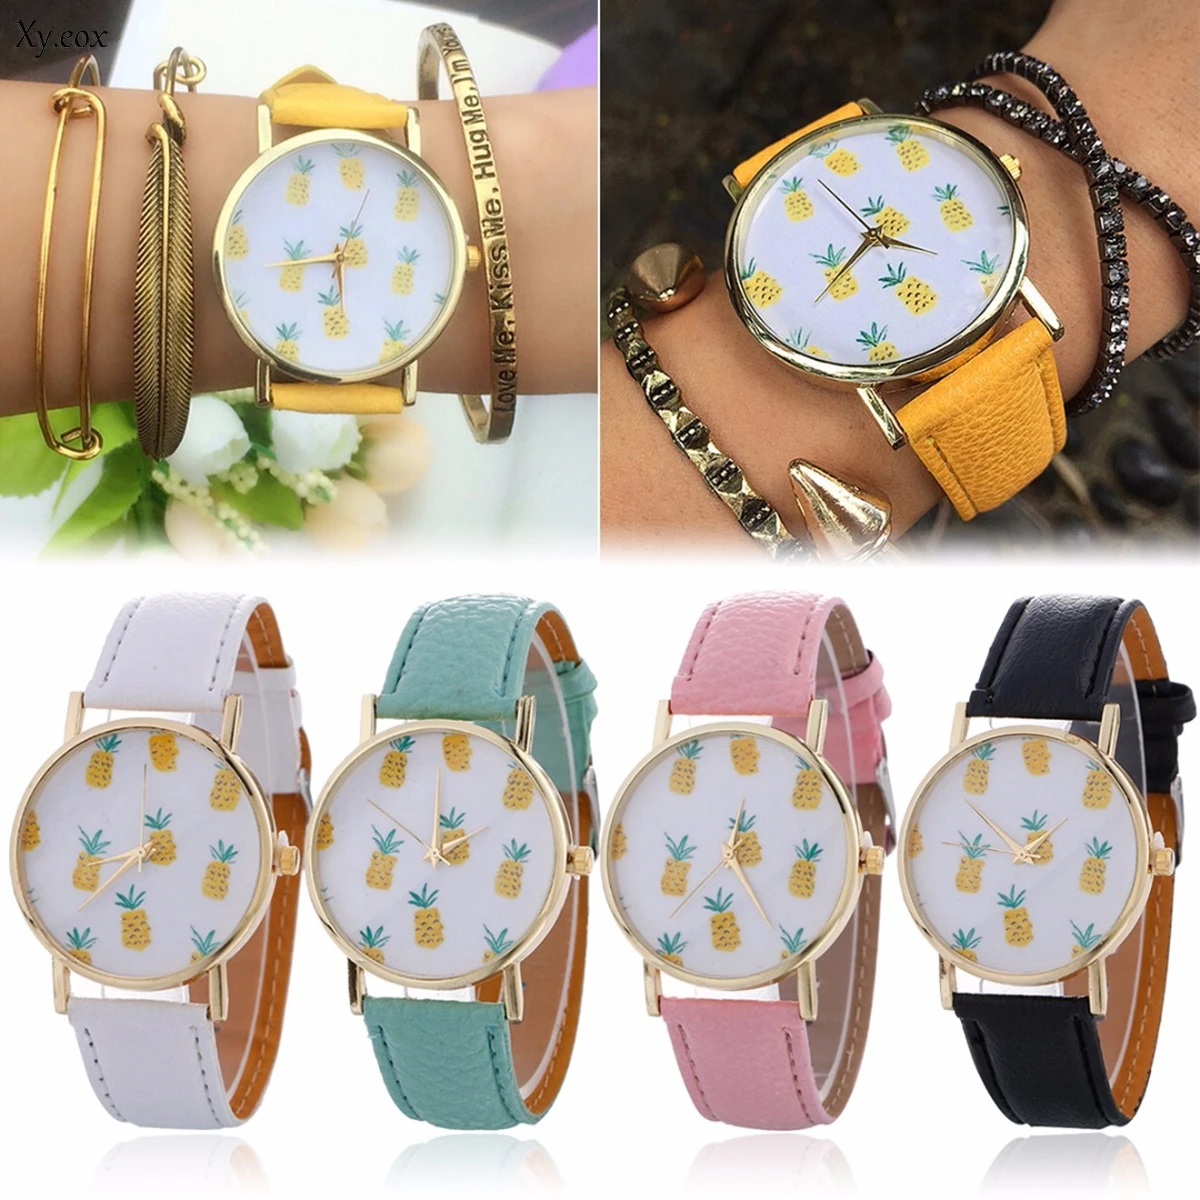 Women's Fashion Pineapple Pattern Leather Band Analog Quartz Wrist Watch